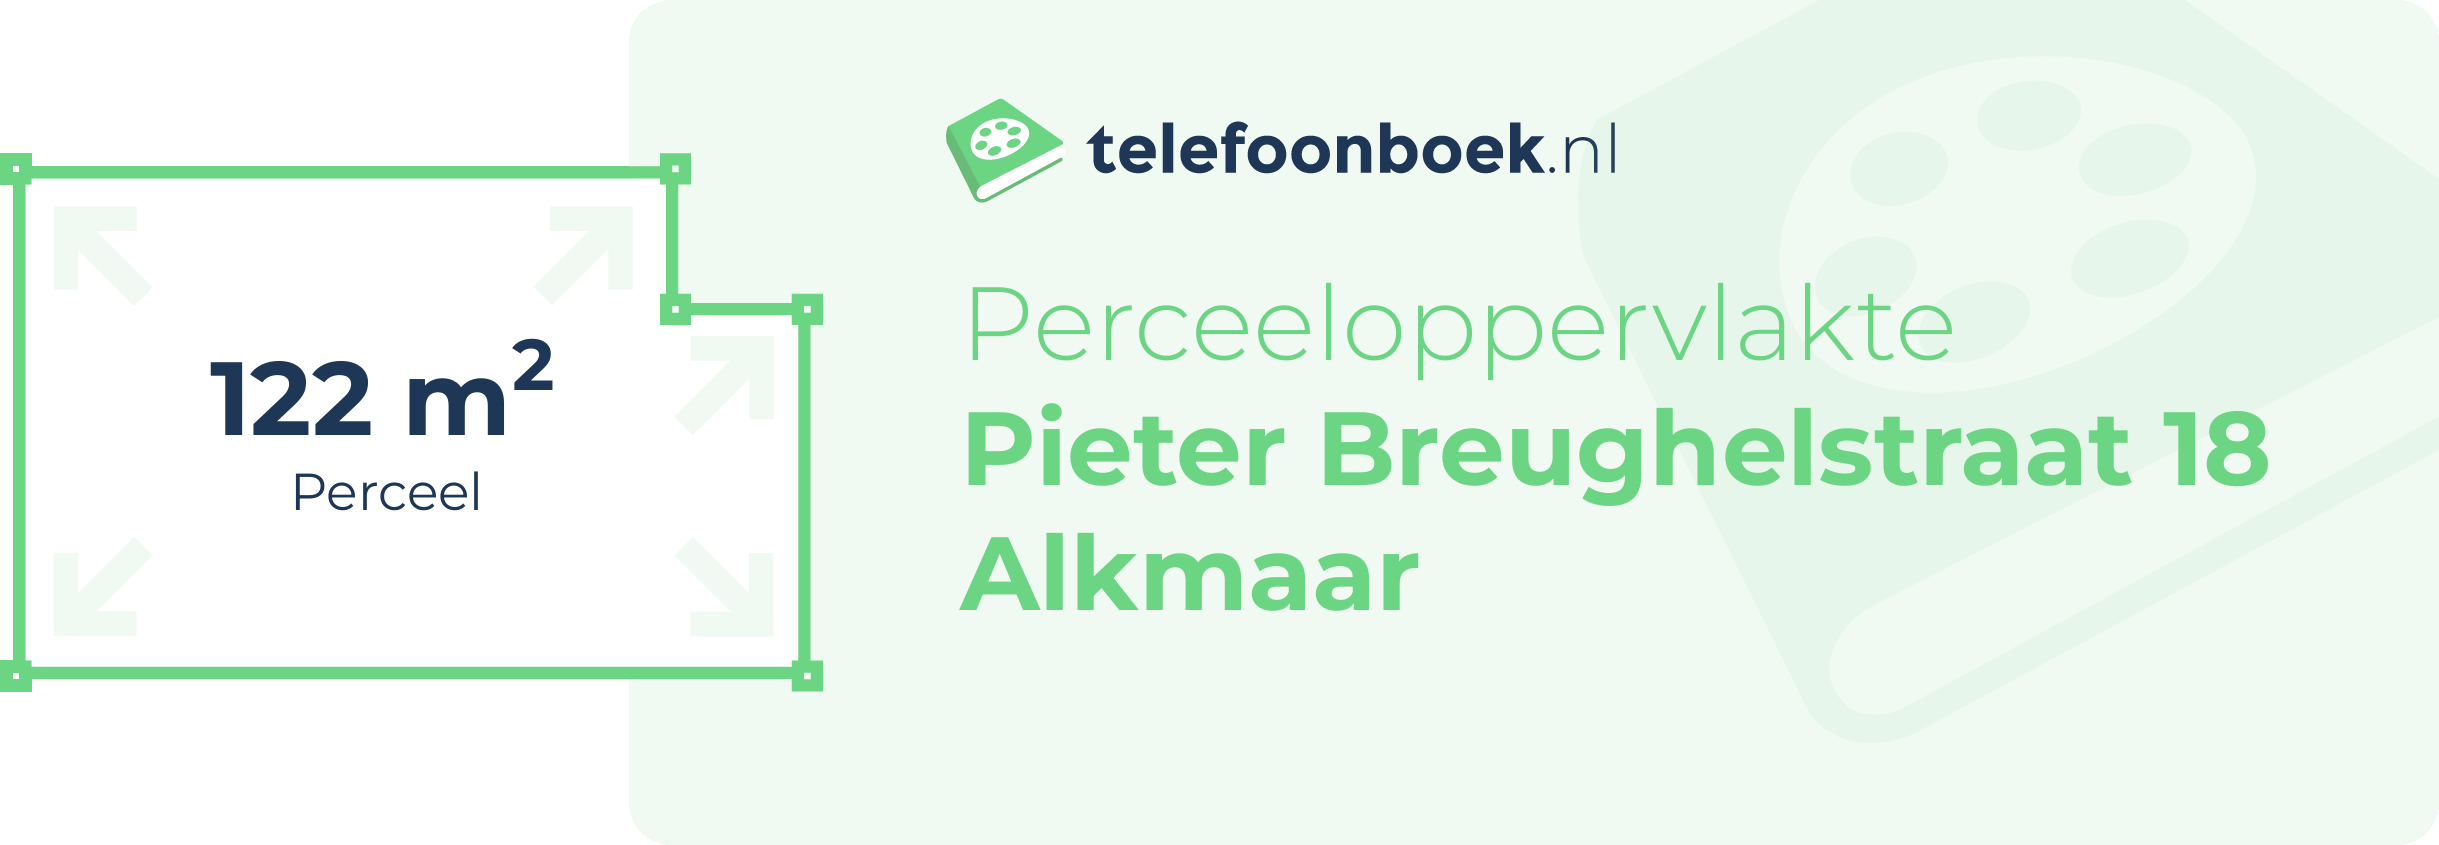 Perceeloppervlakte Pieter Breughelstraat 18 Alkmaar